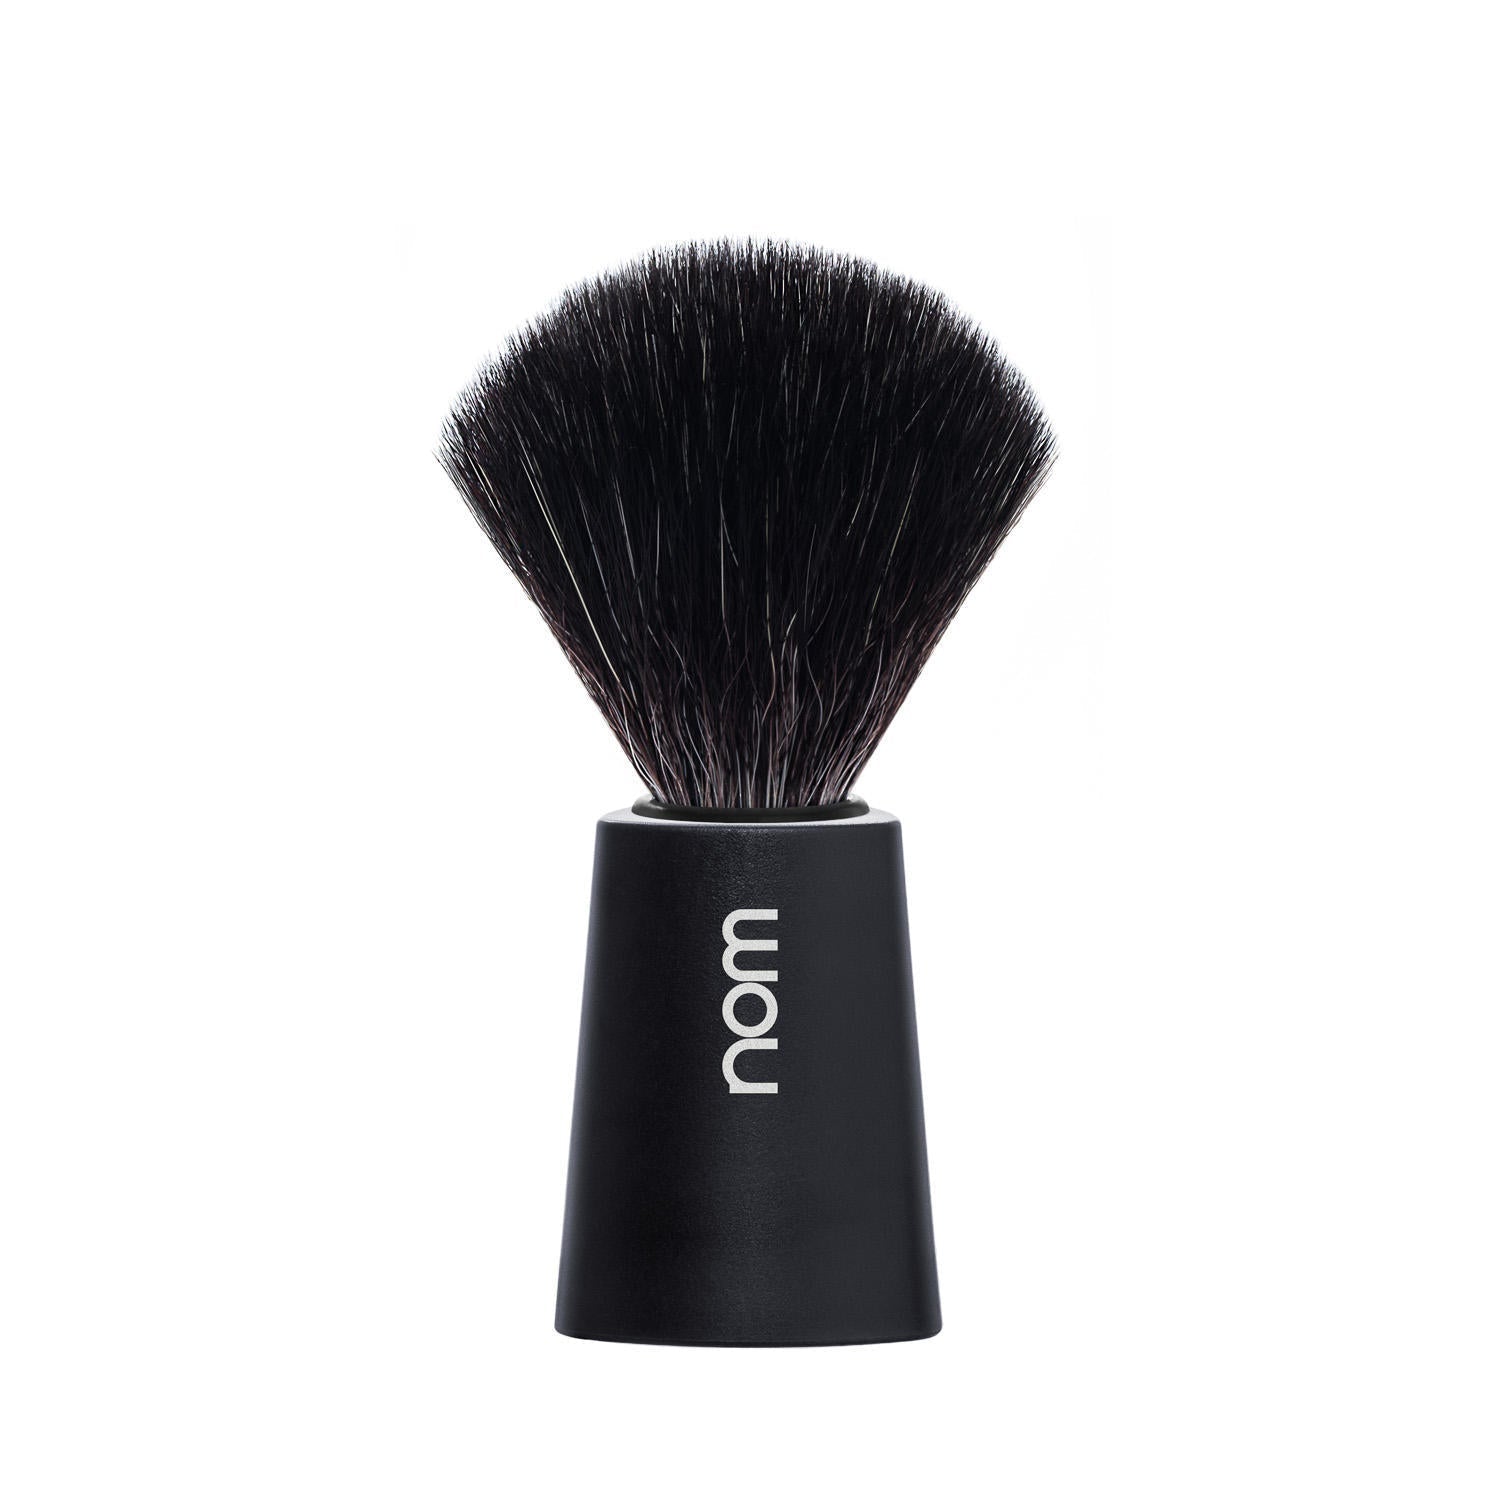 nom CARL Vegan Shaving Brush in Black 